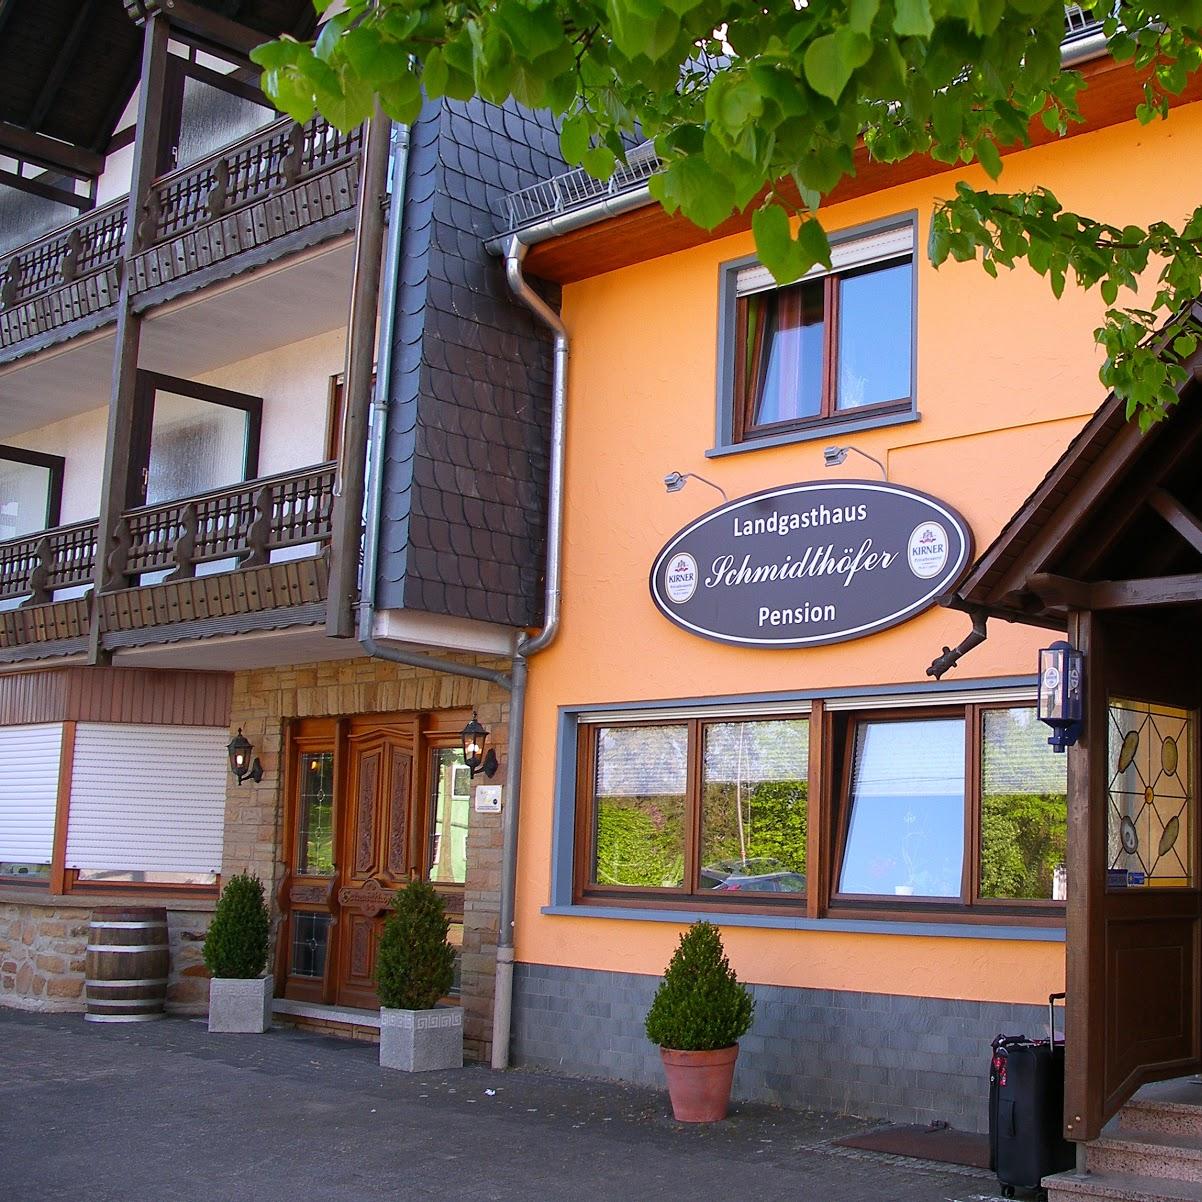 Restaurant "Landgasthaus & Pension Schmidthöfer" in Berschweiler bei Kirn